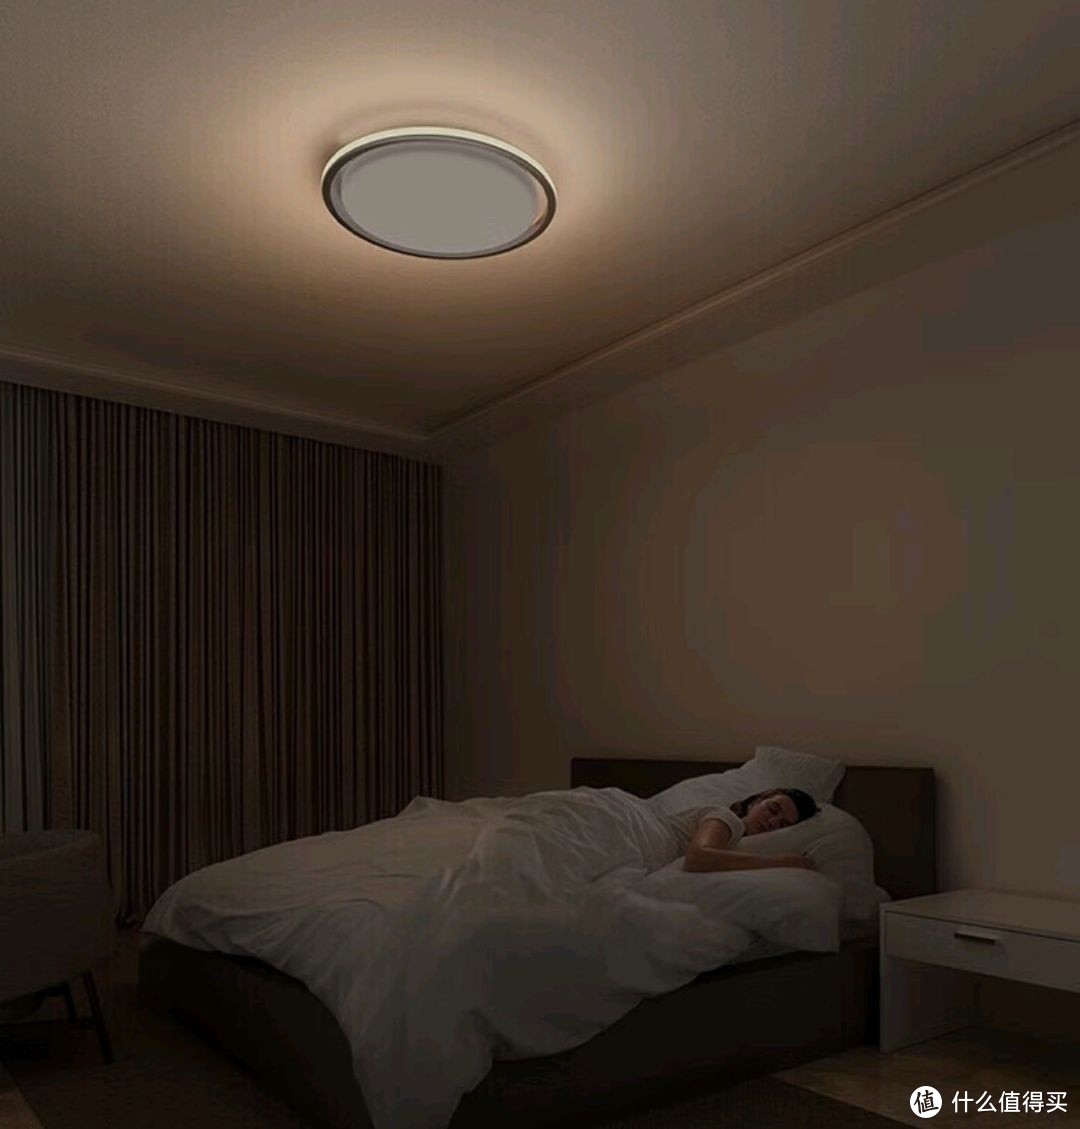 小米卧室吸顶灯Pro，颜值高，更智能。